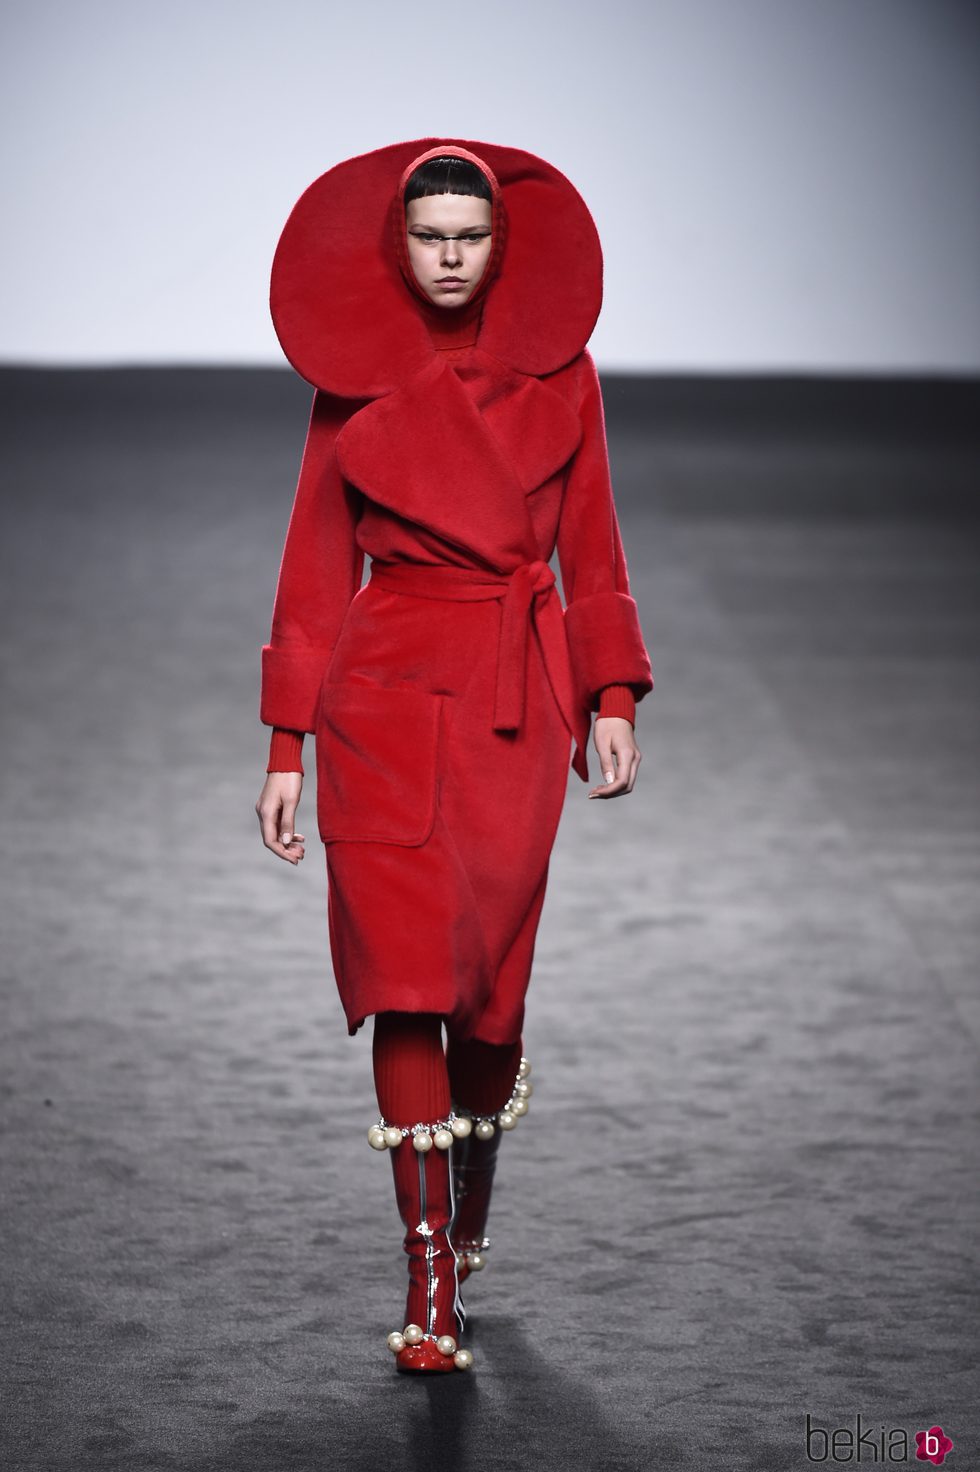 Traje rojo de María Escote de la campaña otoño/invierno 2018/2019 en el desfile de la Madrid Fashion Week